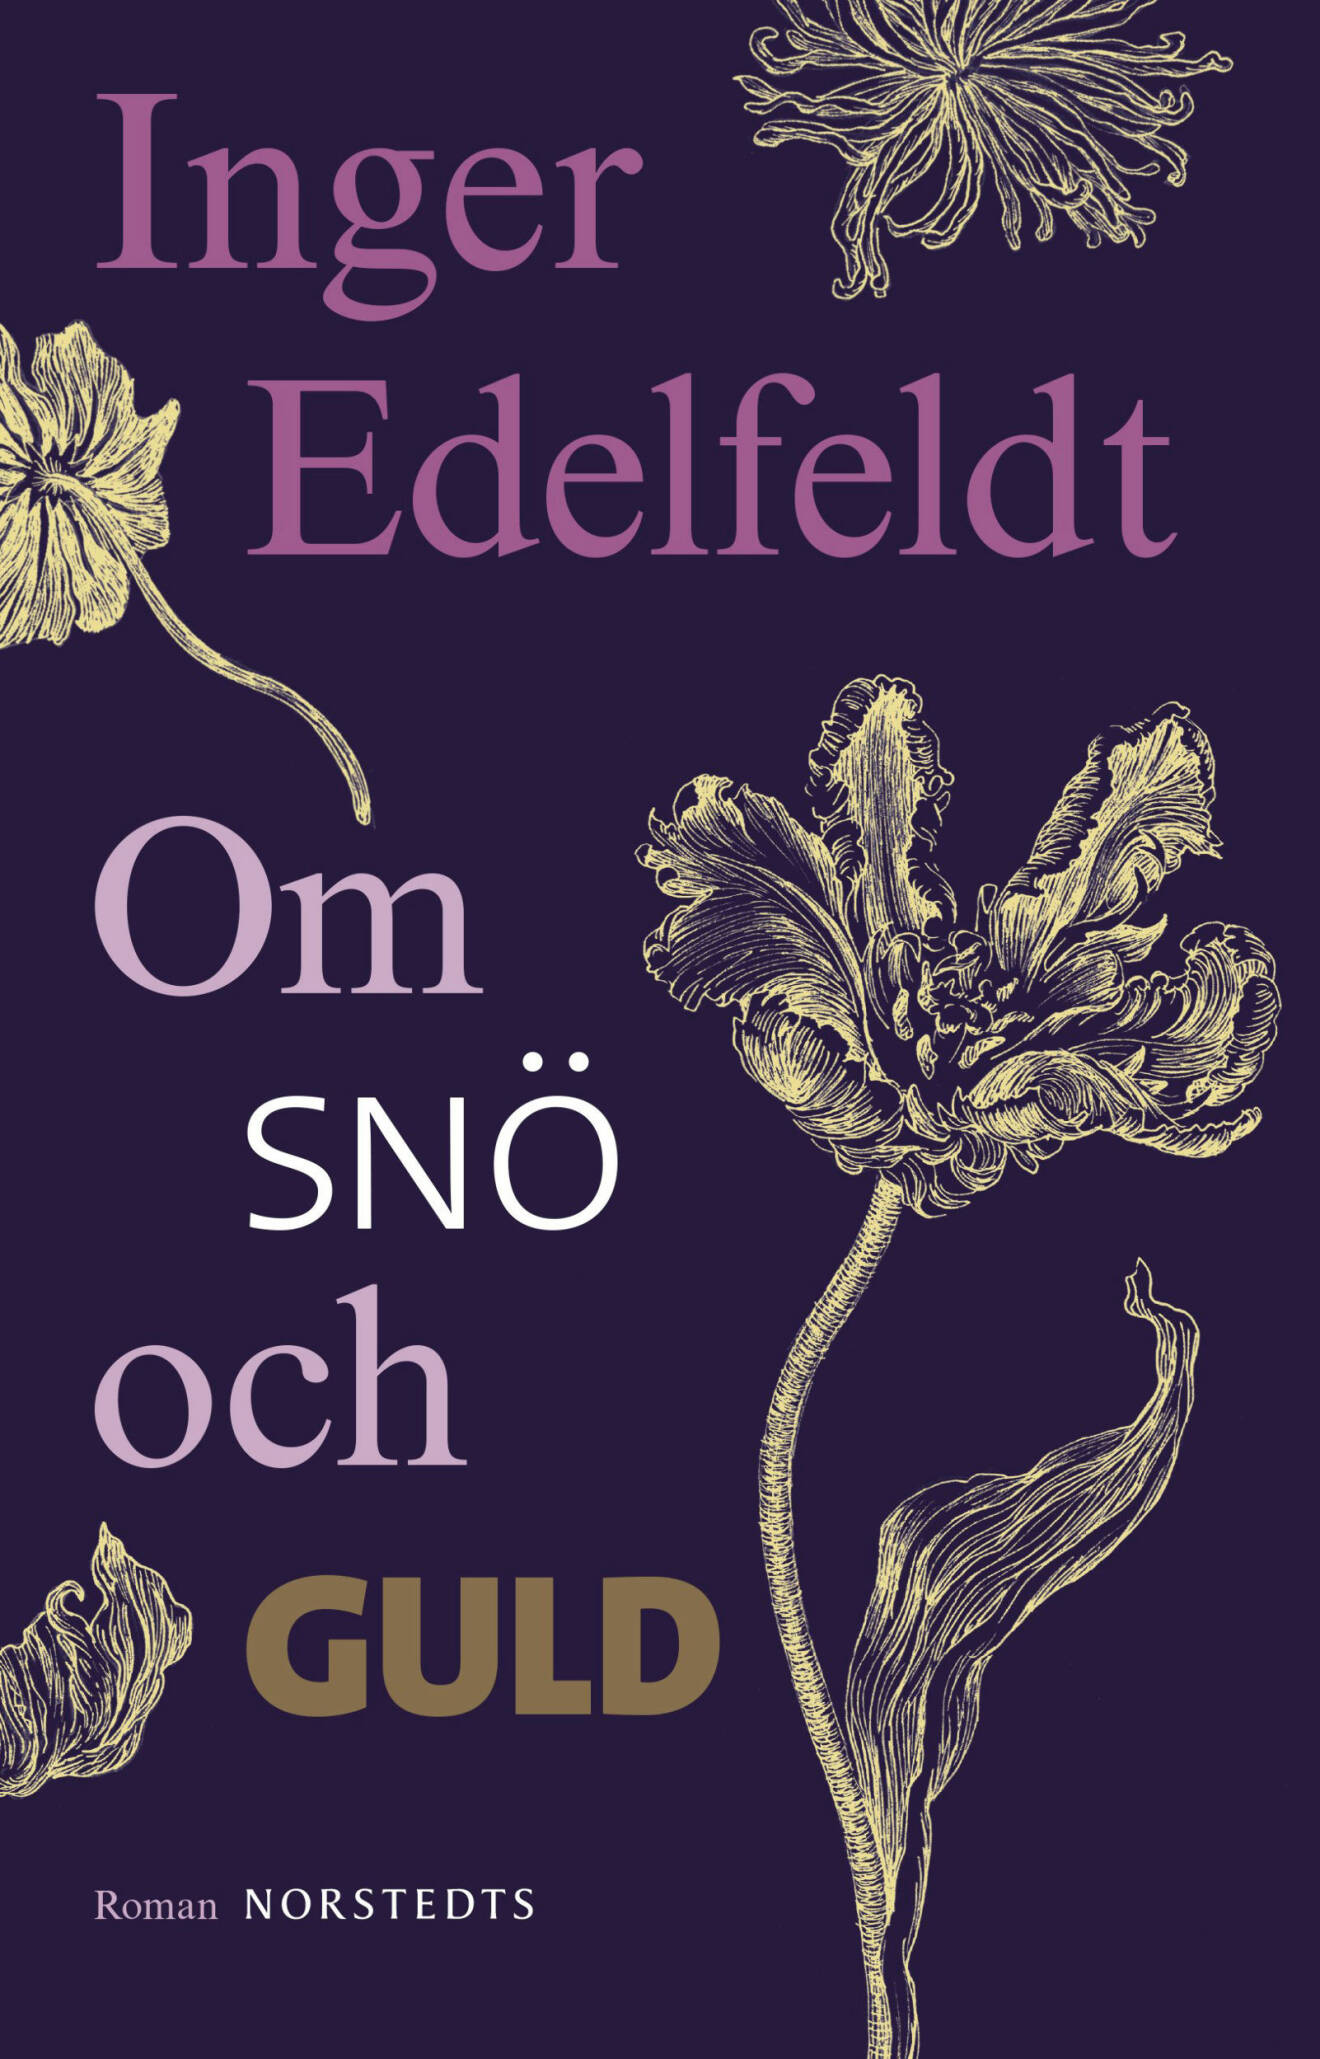 Om snö och guld, Inger Edelfeldt, roman (Norstedts).